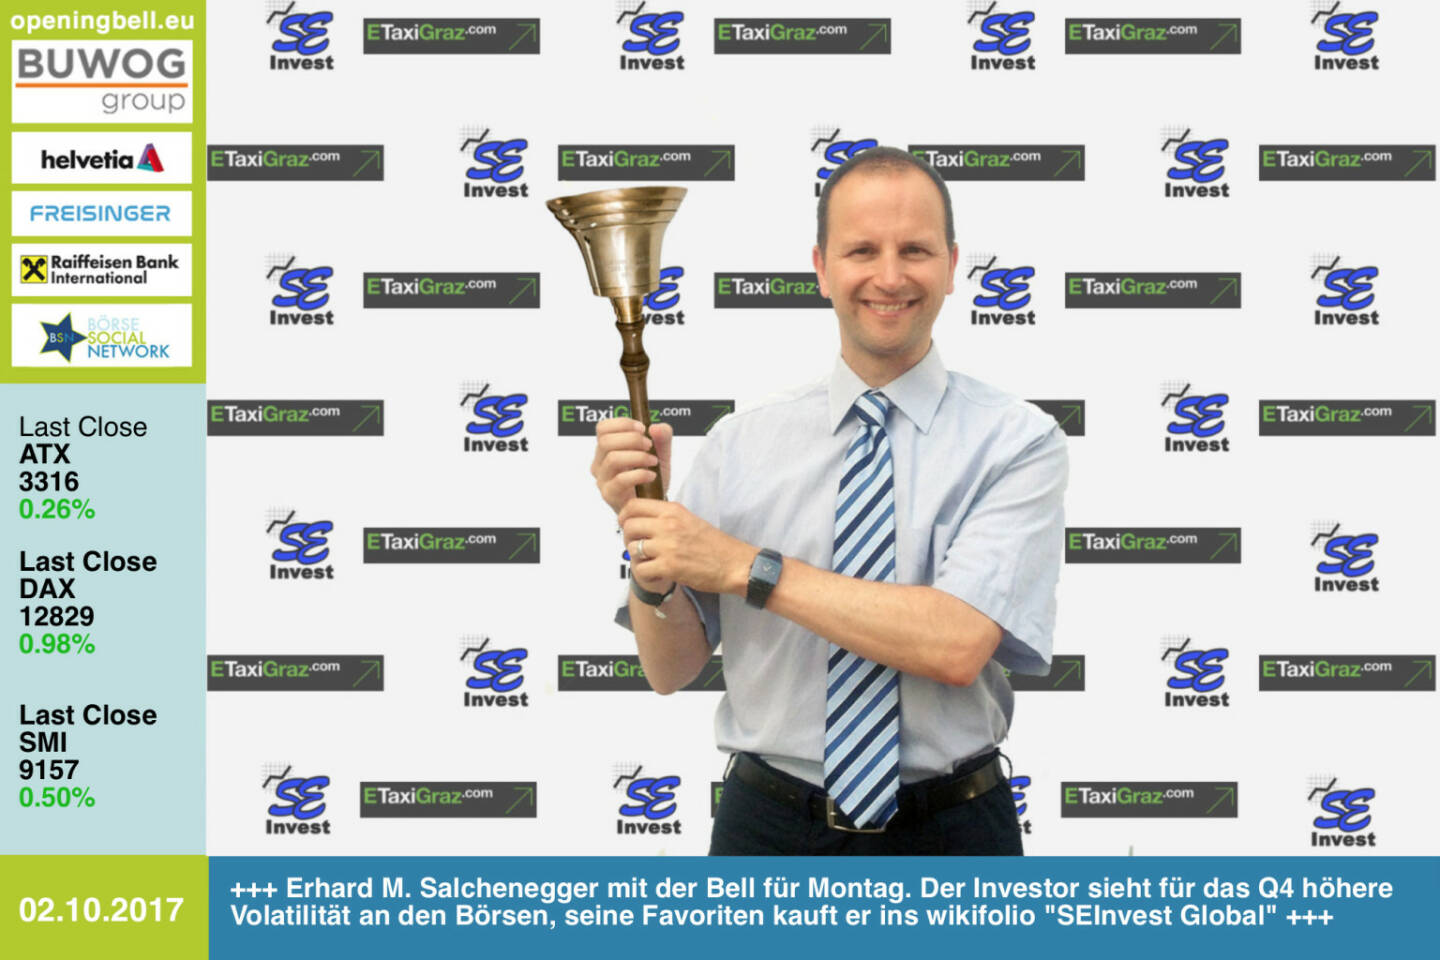 #openingbell am 2.10.: Erhard M. Salchenegger läutet die Opening Bell für Montag. Der Investor sieht für das Q4 höhere Volatilität an den Börsen, seine Favoriten kauft er ins wikifolio SEInvest Global https://www.facebook.com/groups/GeldanlageNetwork/ #goboersewien 